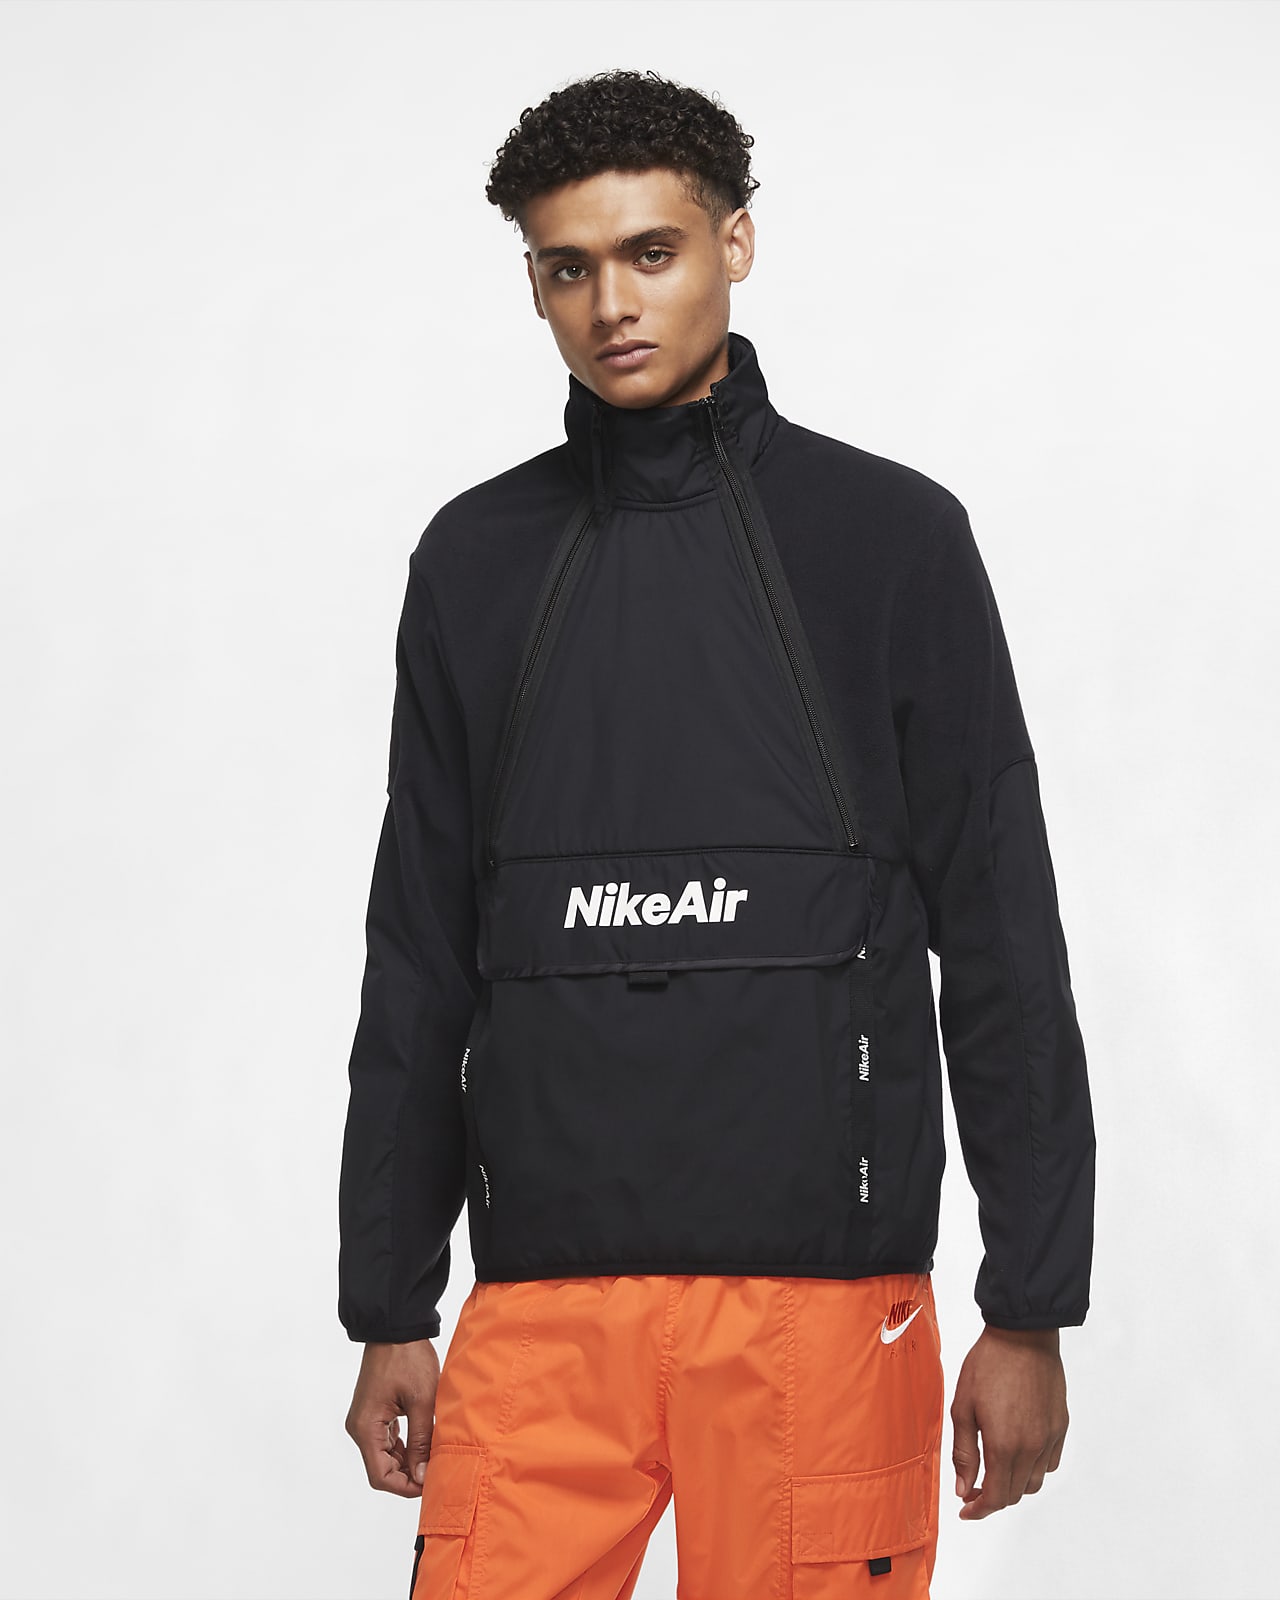 Nike Air Men's Winterized Jacket